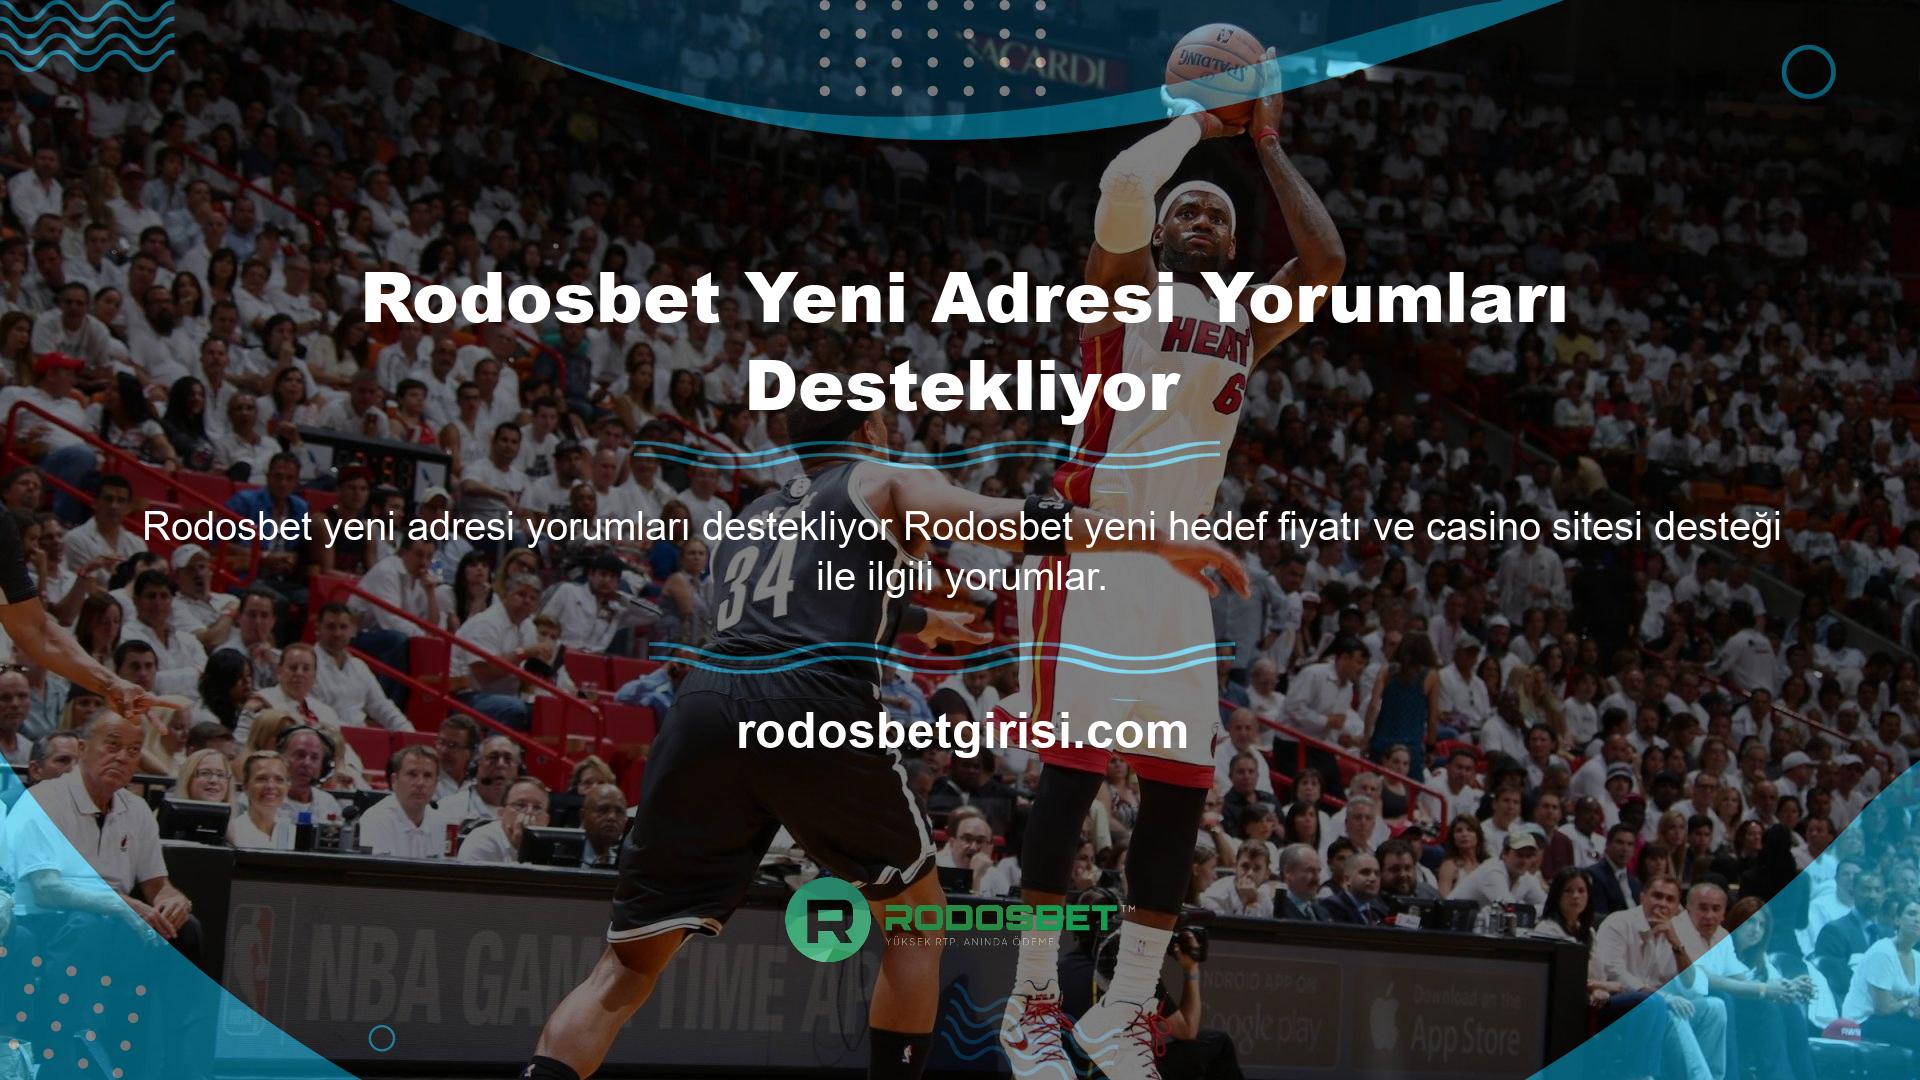 Rodosbet yeni adresi yorumları destekliyor